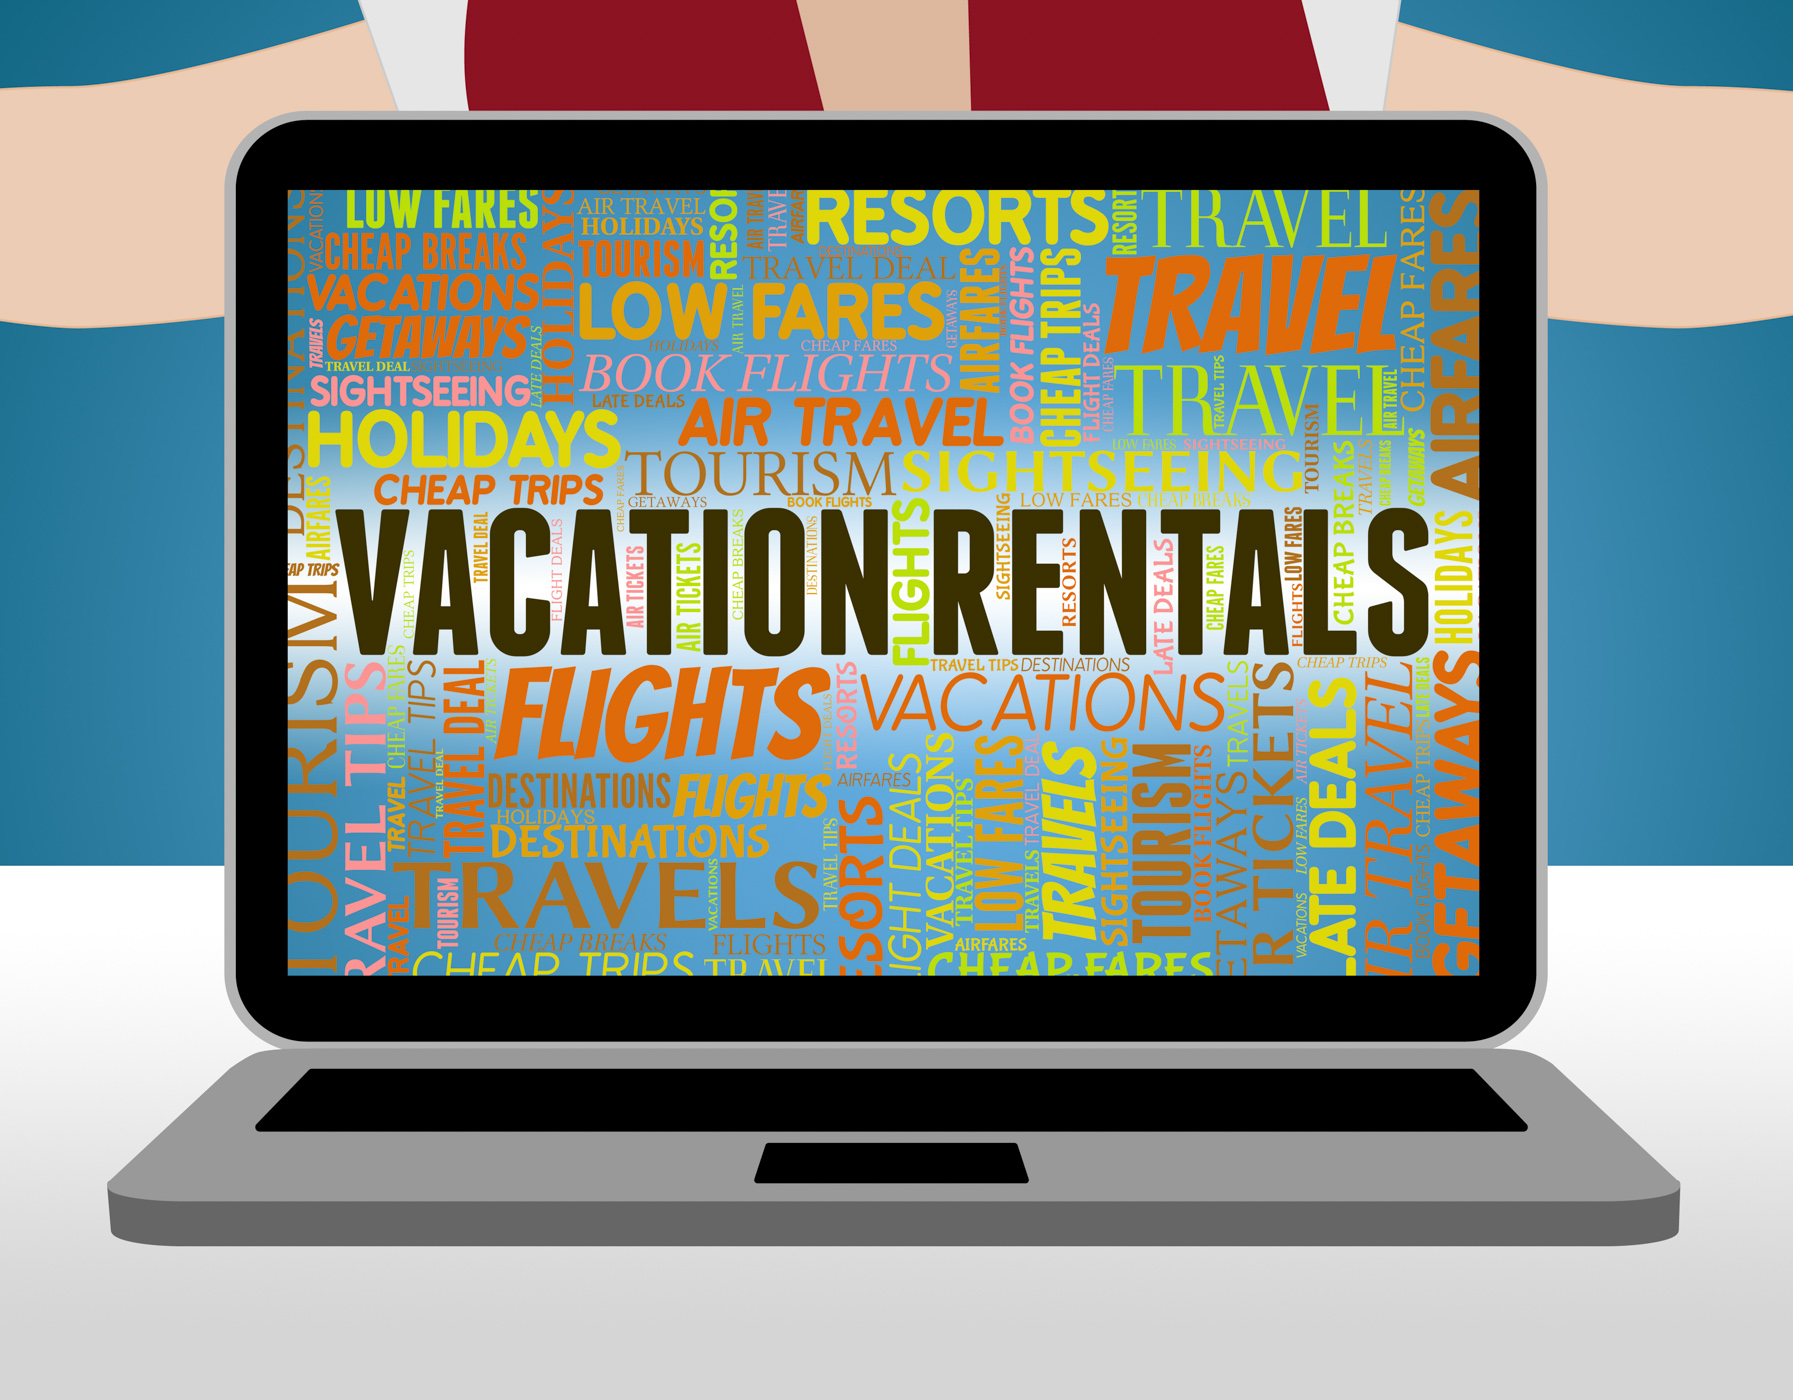 Vacation rentals shows vacational holidays and vacationing photo